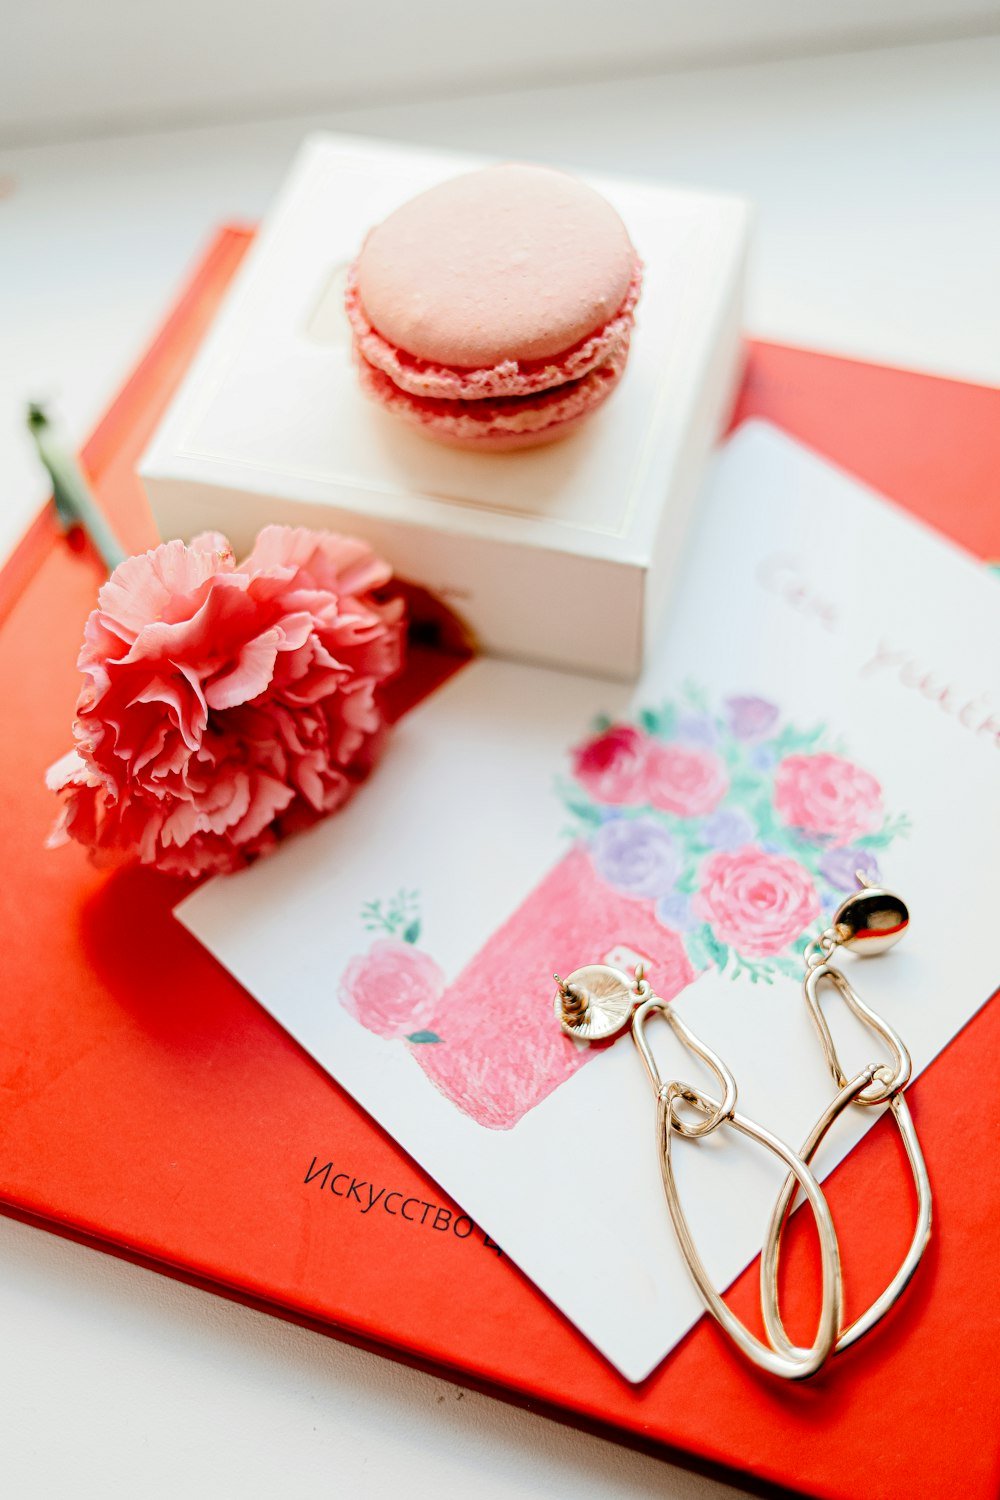 白と赤のグリーティングカードにピンクと白のバラ